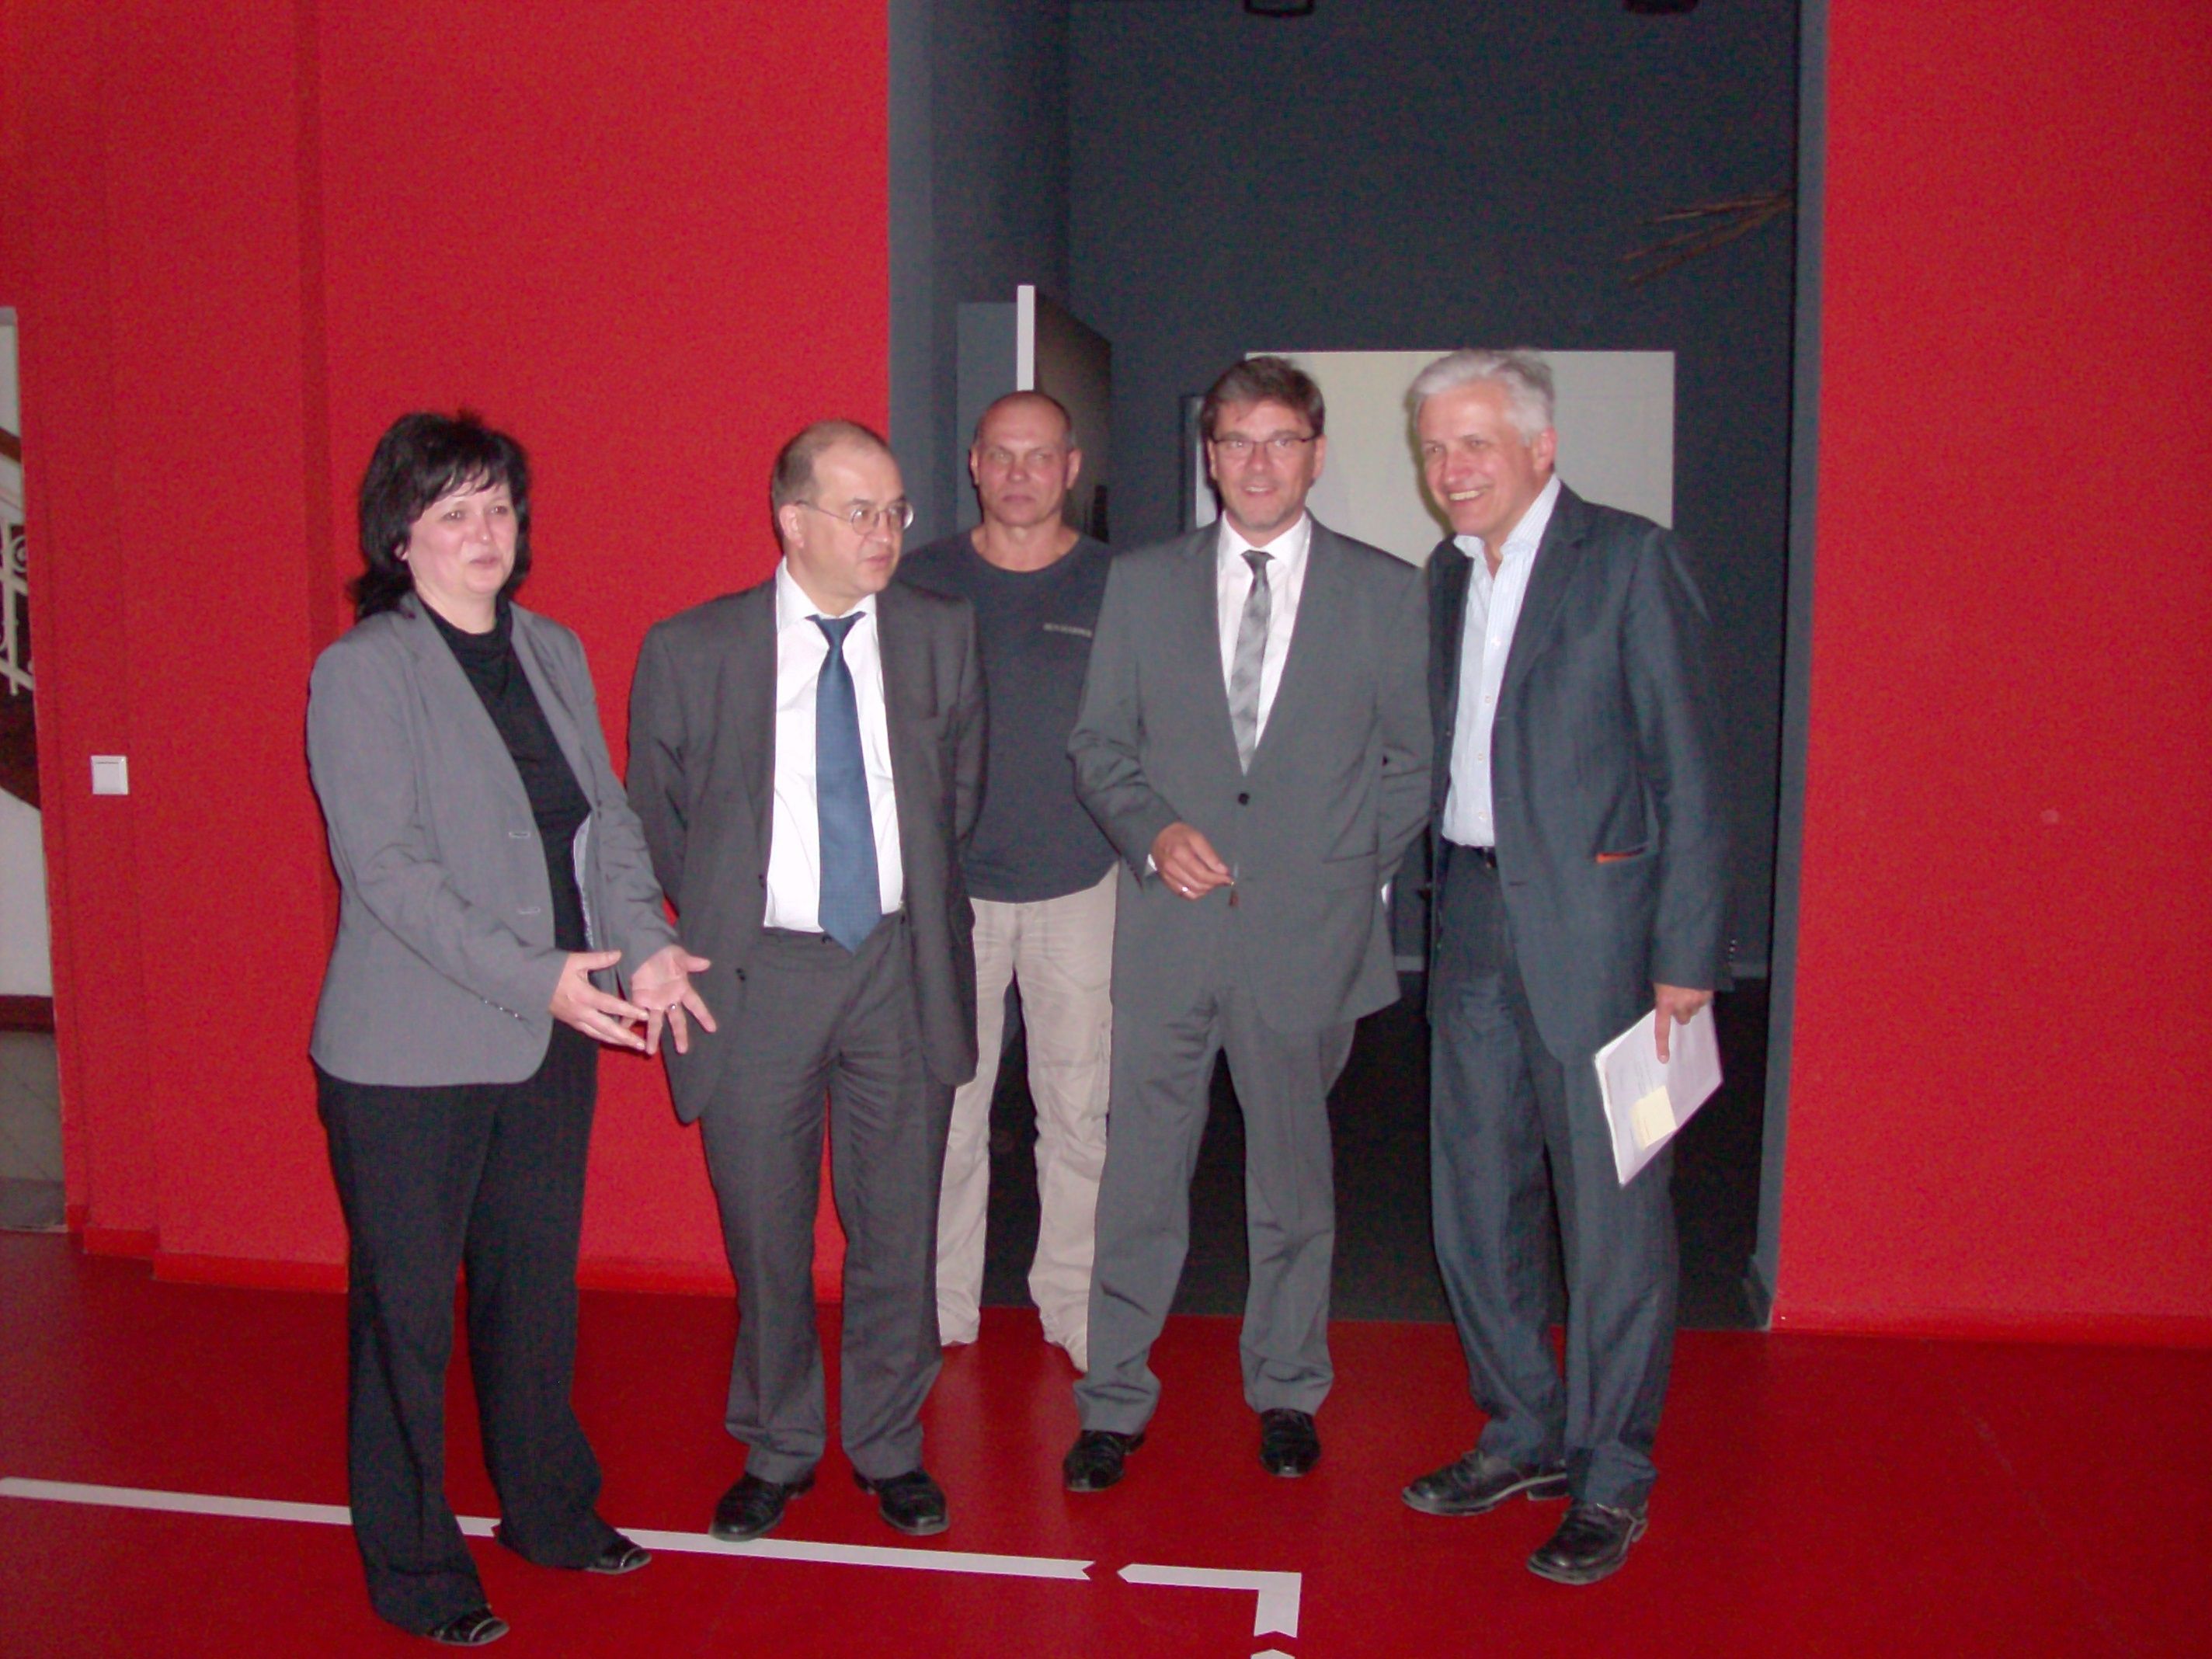 Die Vereinsvorsitzende Gabriele Beyler fhrt Vaatz, Kupfer und Kolbe (v.l.n.r.) gemeinsam mit dem Opferbeiratsvorsitzenden Ralf Weber durch die Austellung.